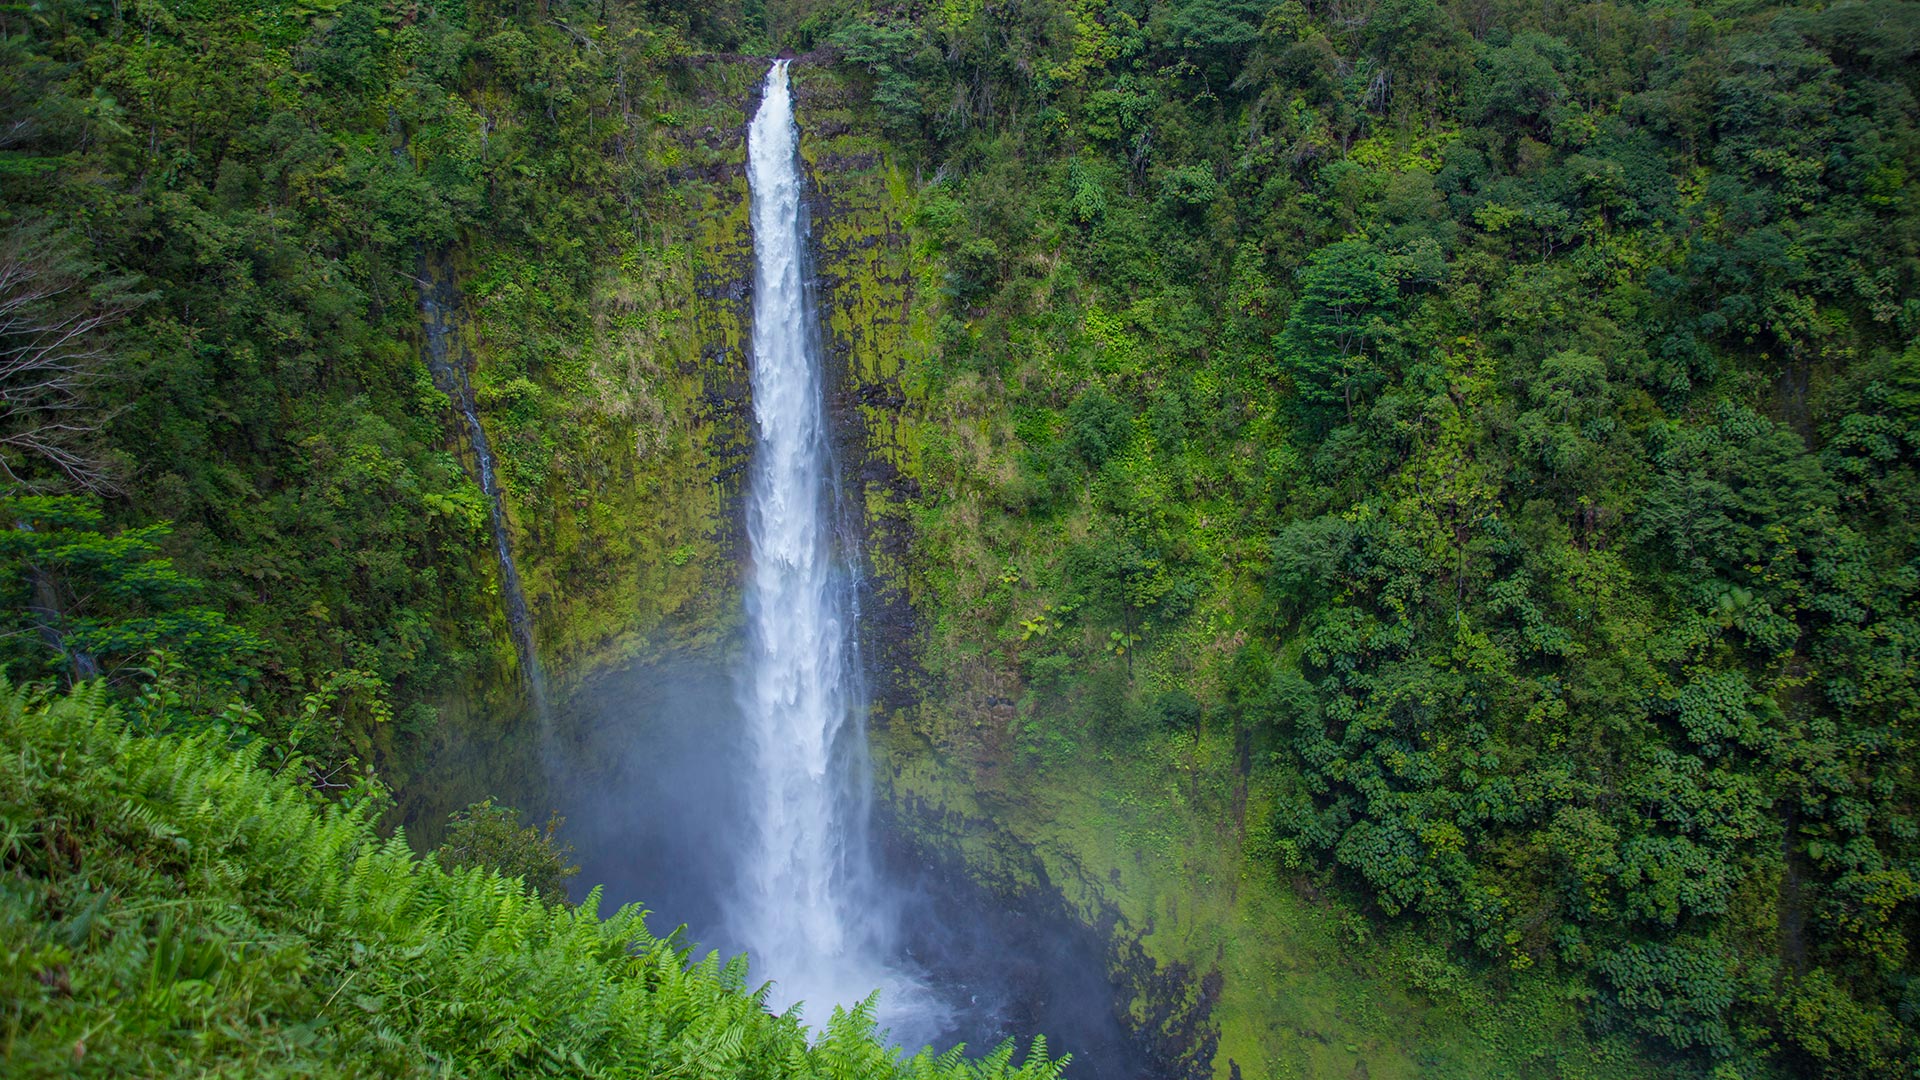 The 442-foot Akaka Falls is big island Hawaii’s most famous waterfall